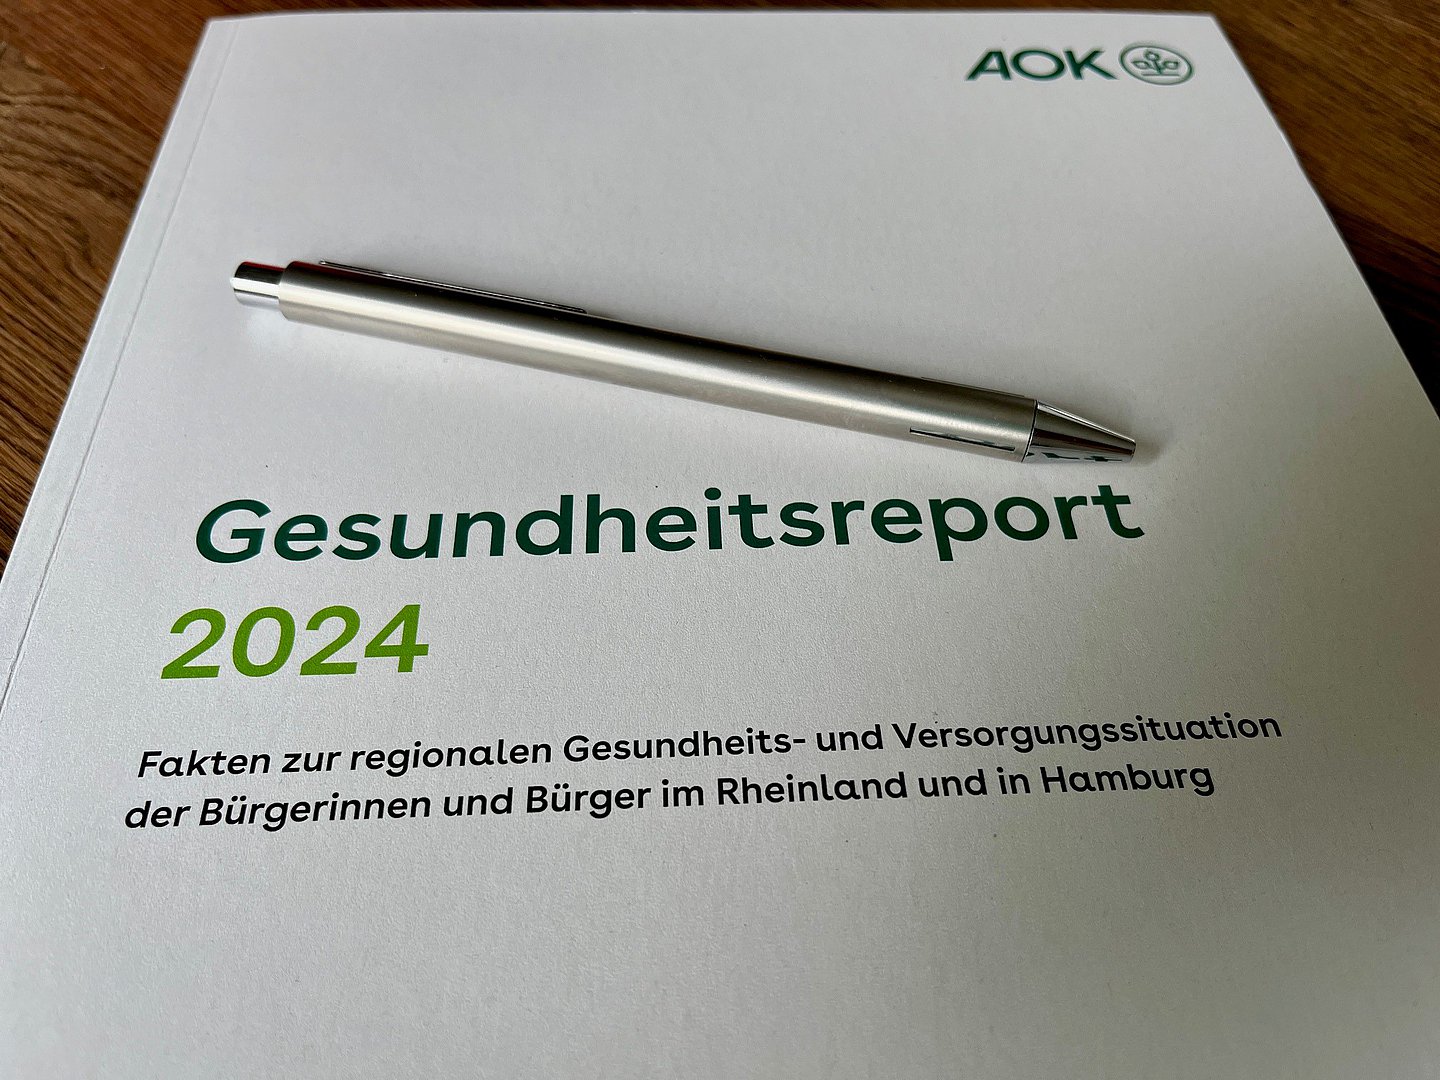 Der Gesundheitsreport 2024 der AOK Rheinland/Hamburg: Schwerpunktthema sind chronische Erkrankungen